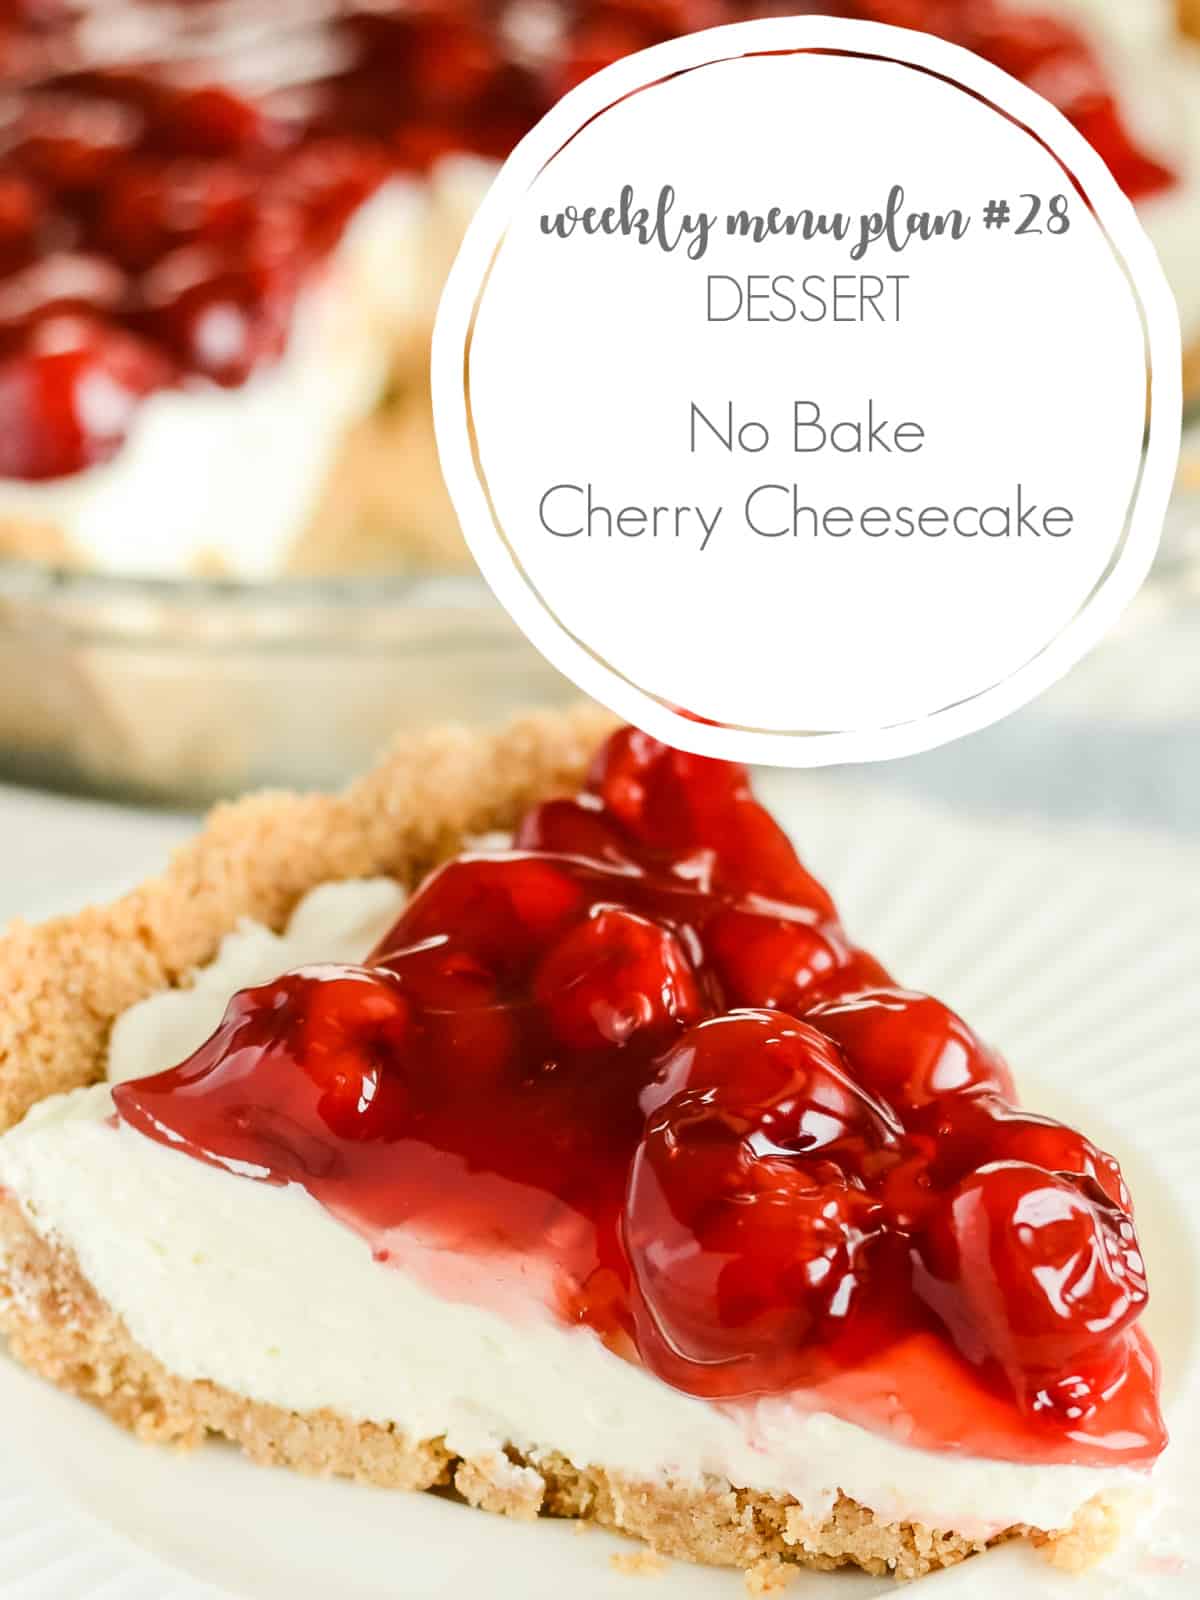 no bake cherry cheesecake